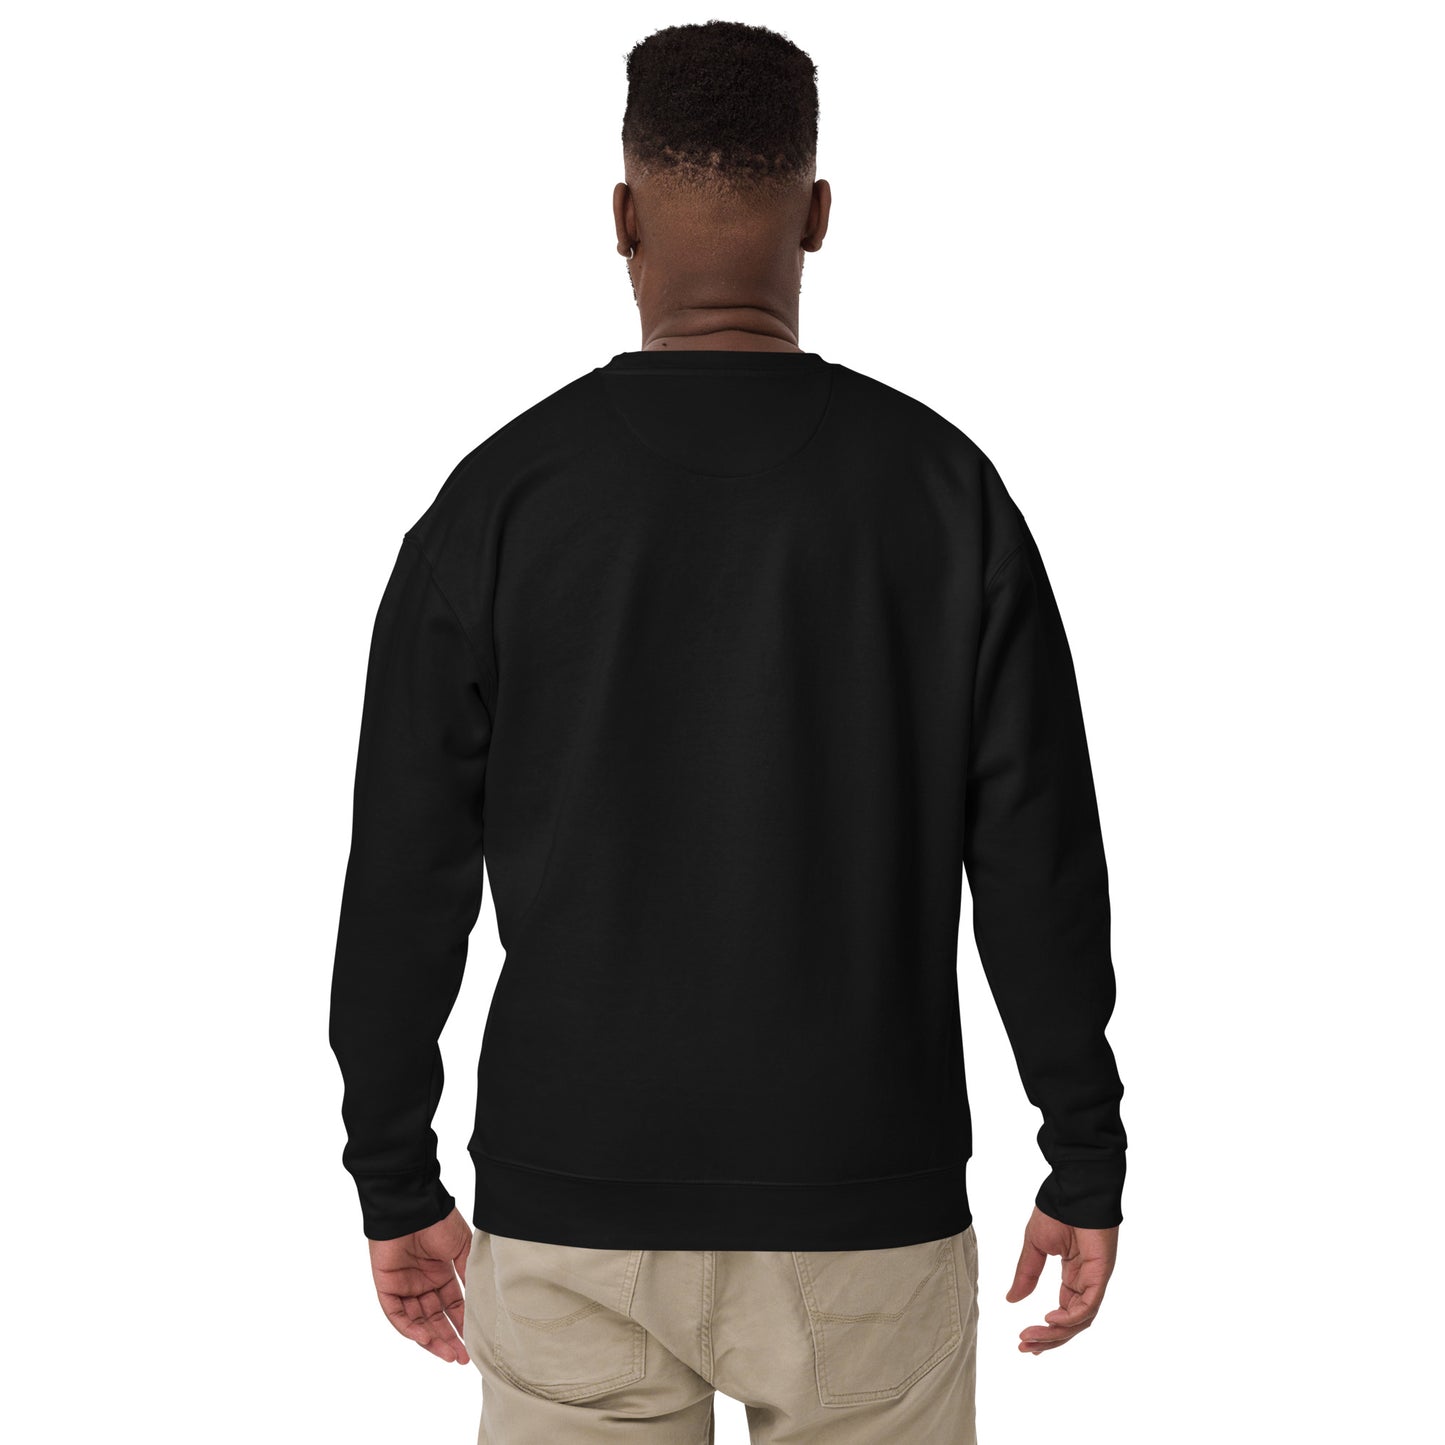 Gotham Unisex Premium Sweatshirt